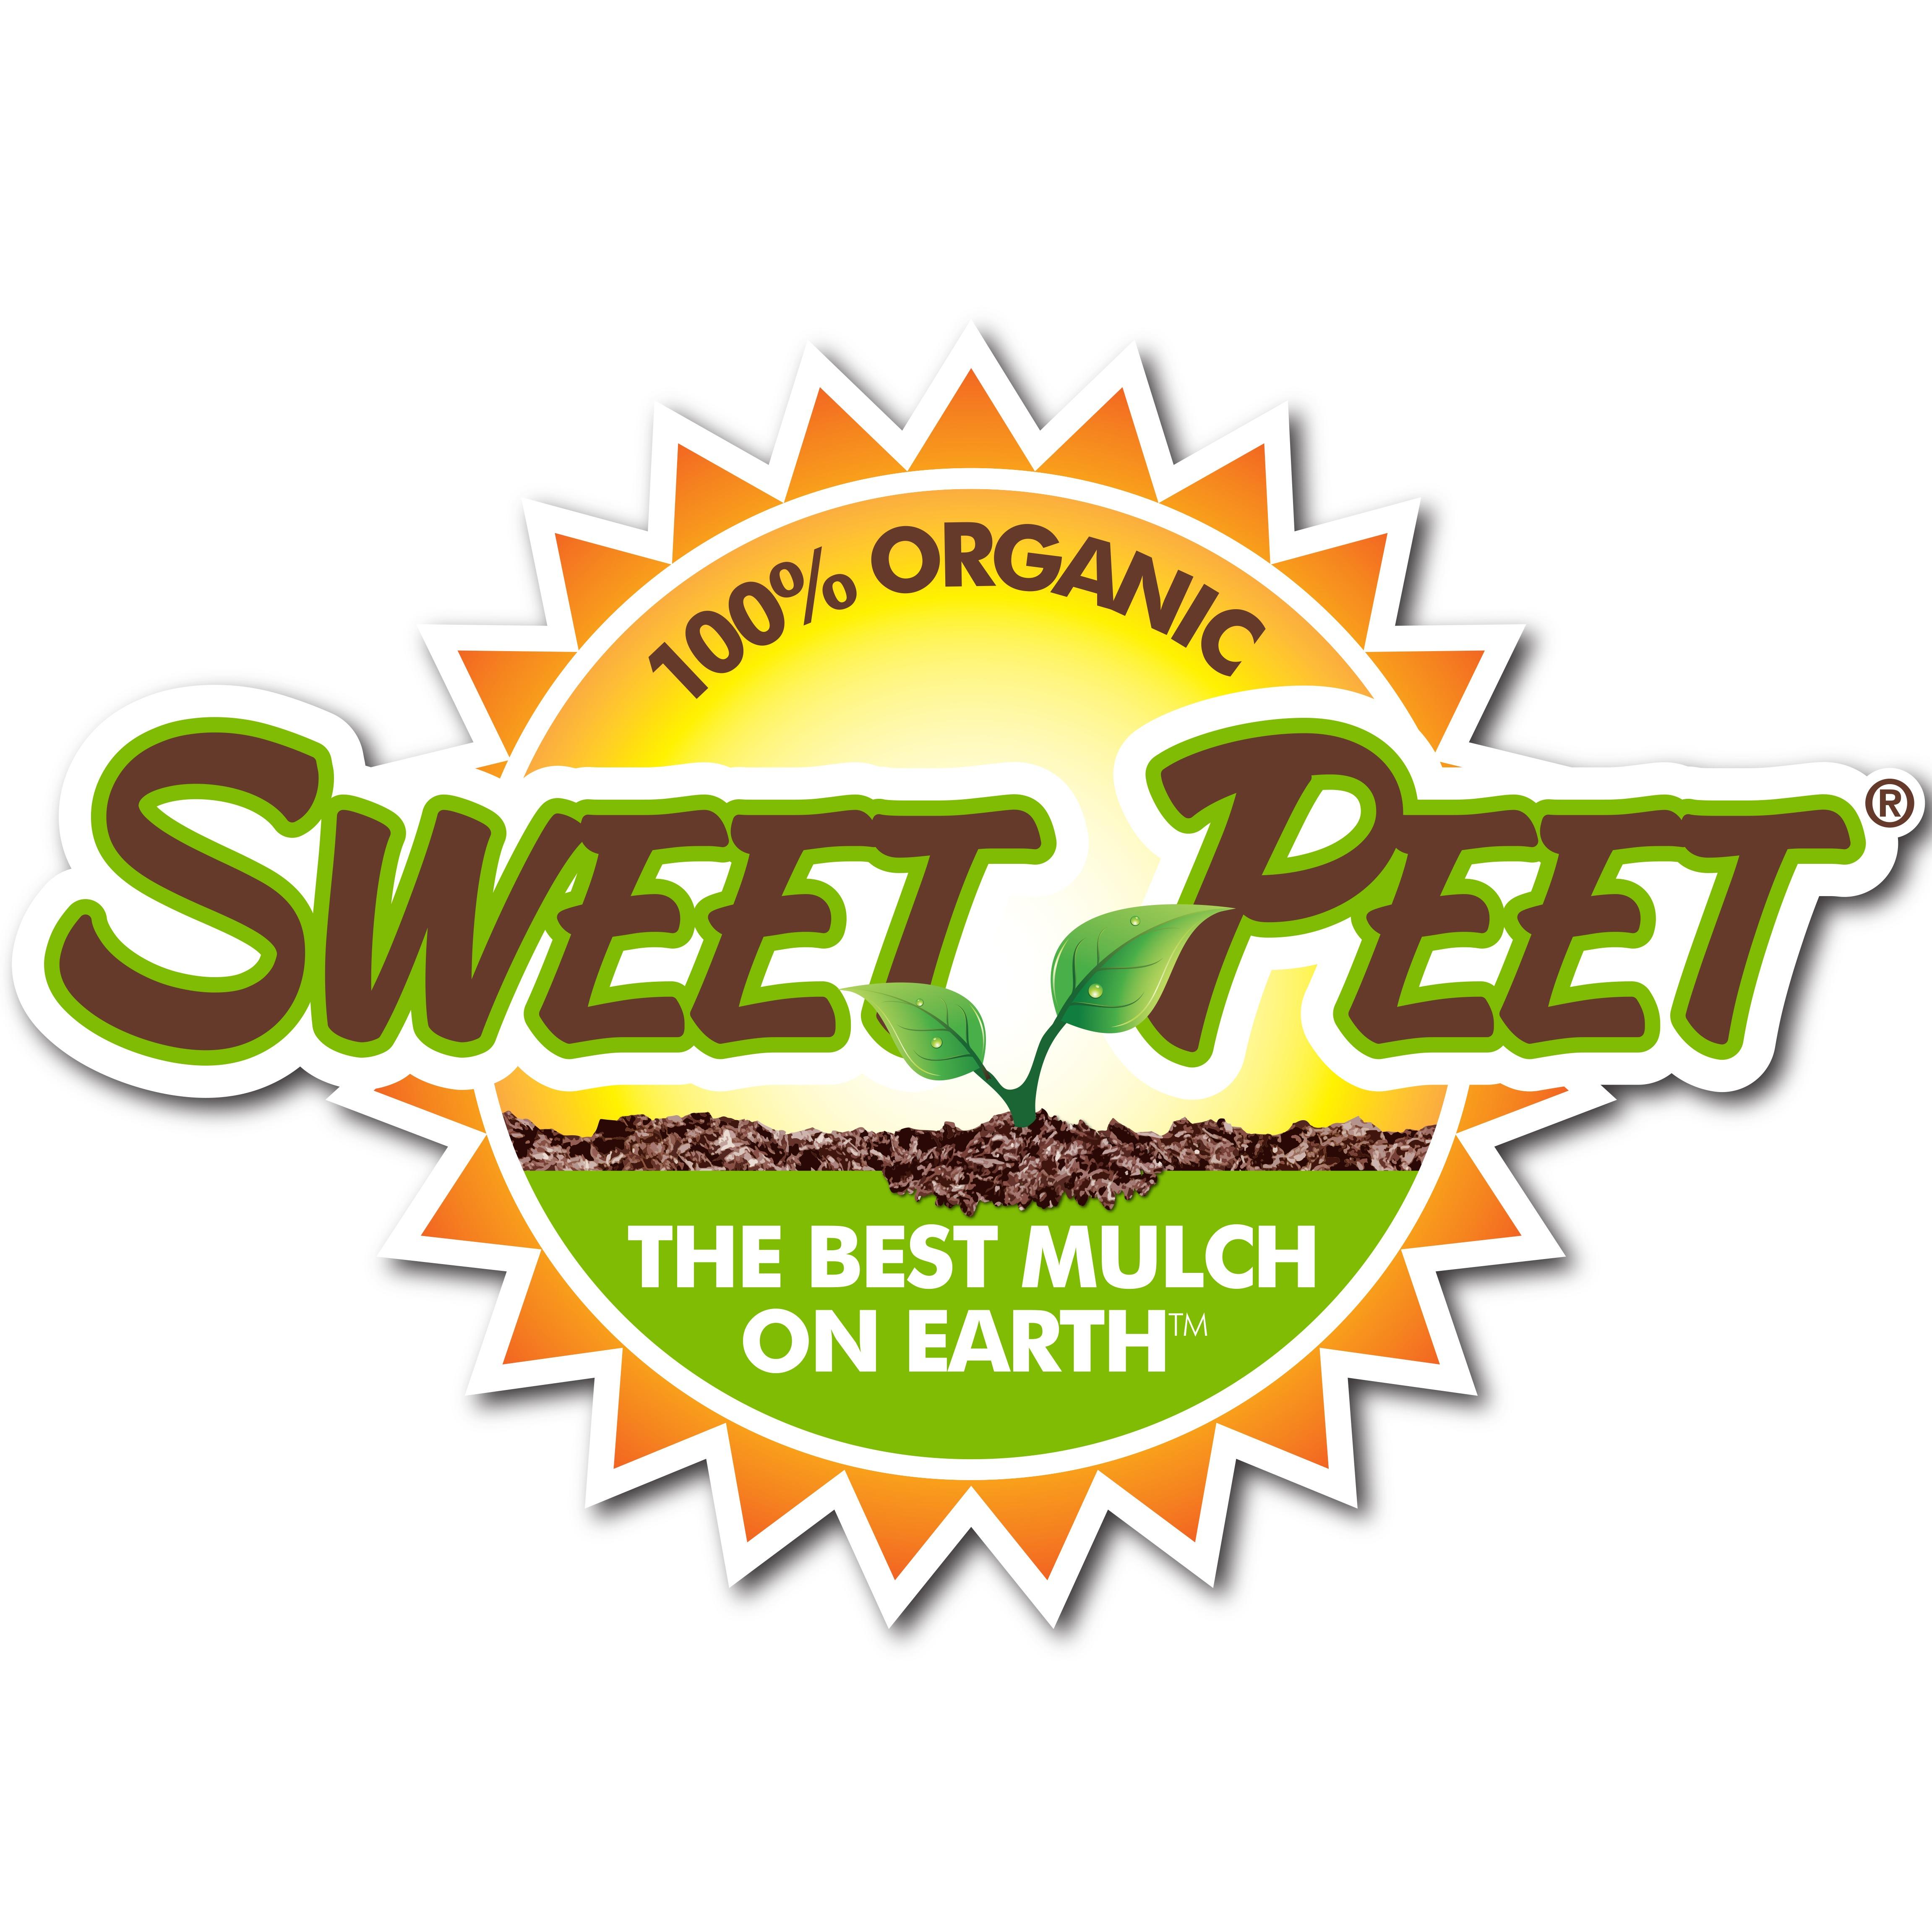 Sweet Peet Ohio